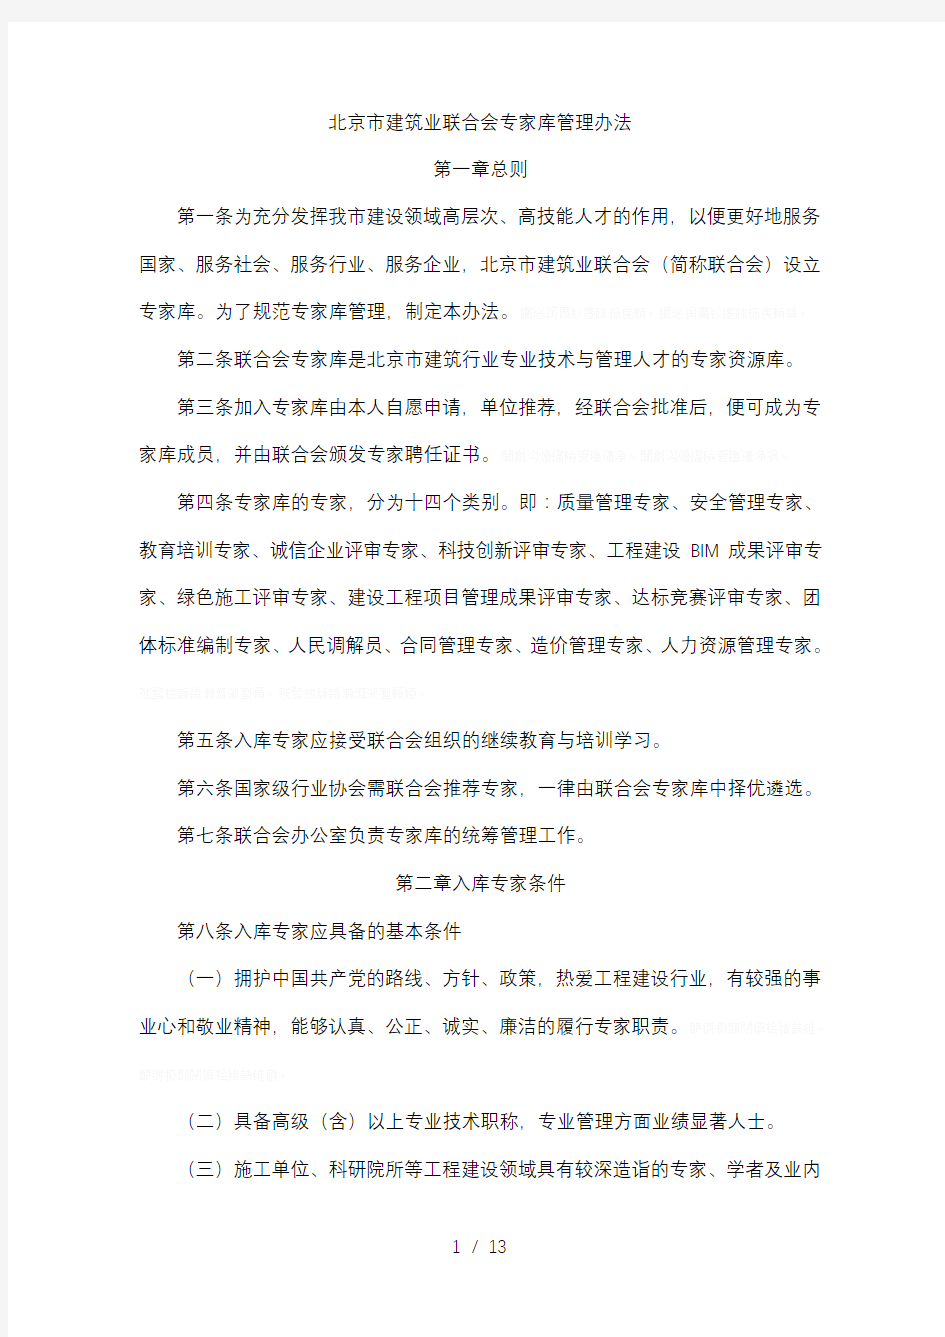 北京市建筑业联合会专家库管理办法